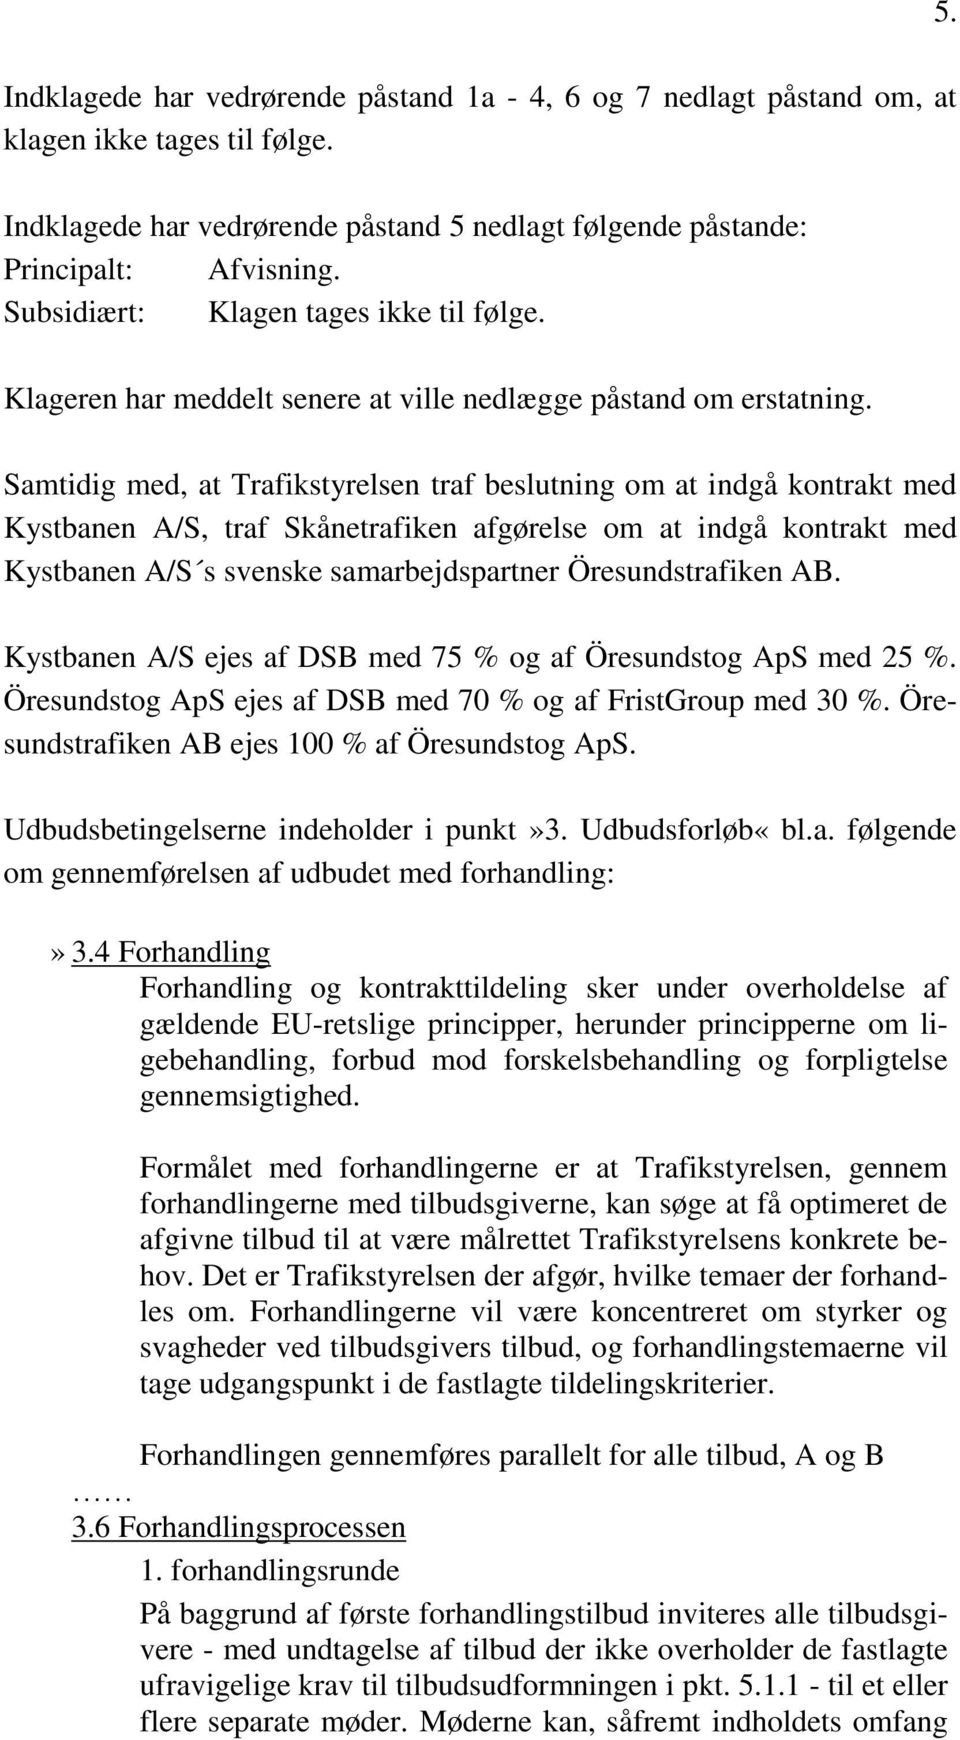 Samtidig med, at Trafikstyrelsen traf beslutning om at indgå kontrakt med Kystbanen A/S, traf Skånetrafiken afgørelse om at indgå kontrakt med Kystbanen A/S s svenske samarbejdspartner